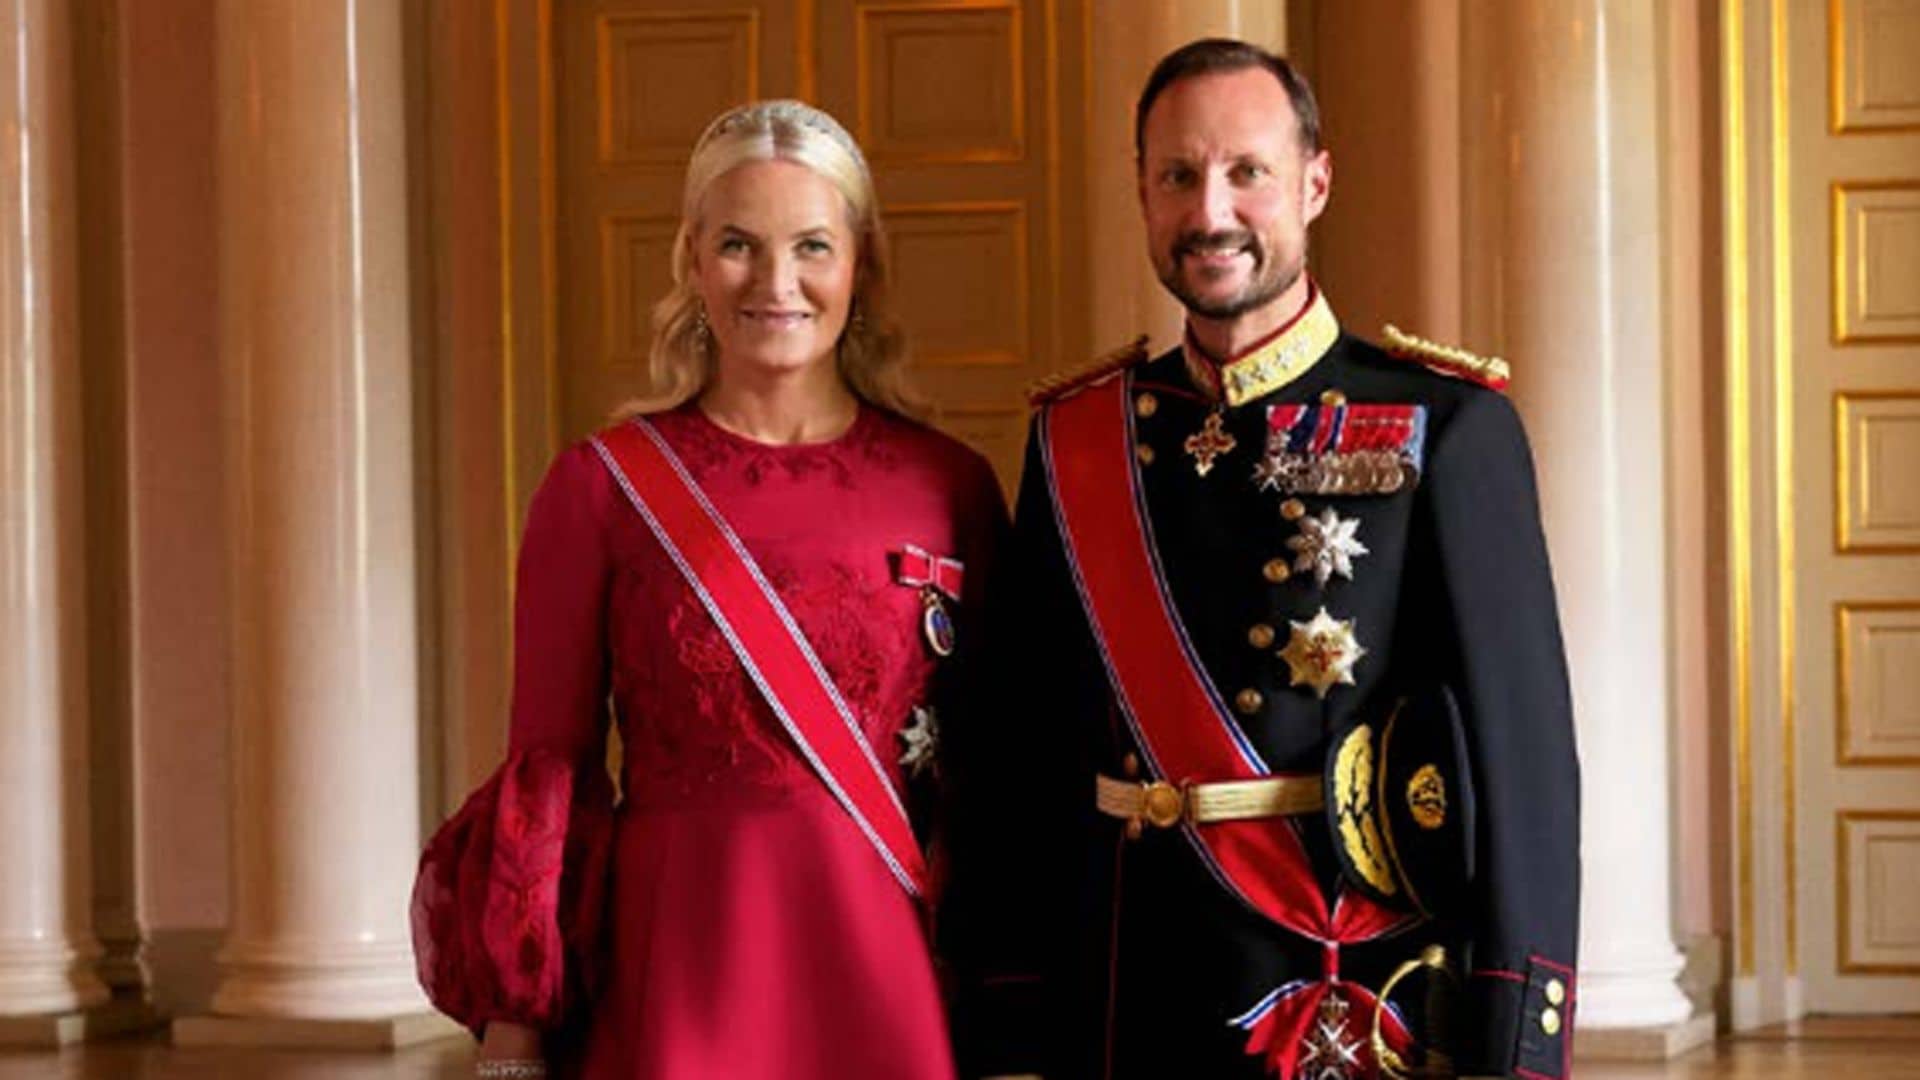 Haakon y Mette-Marit de Noruega se adelantan a su aniversario de boda con una imagen inédita